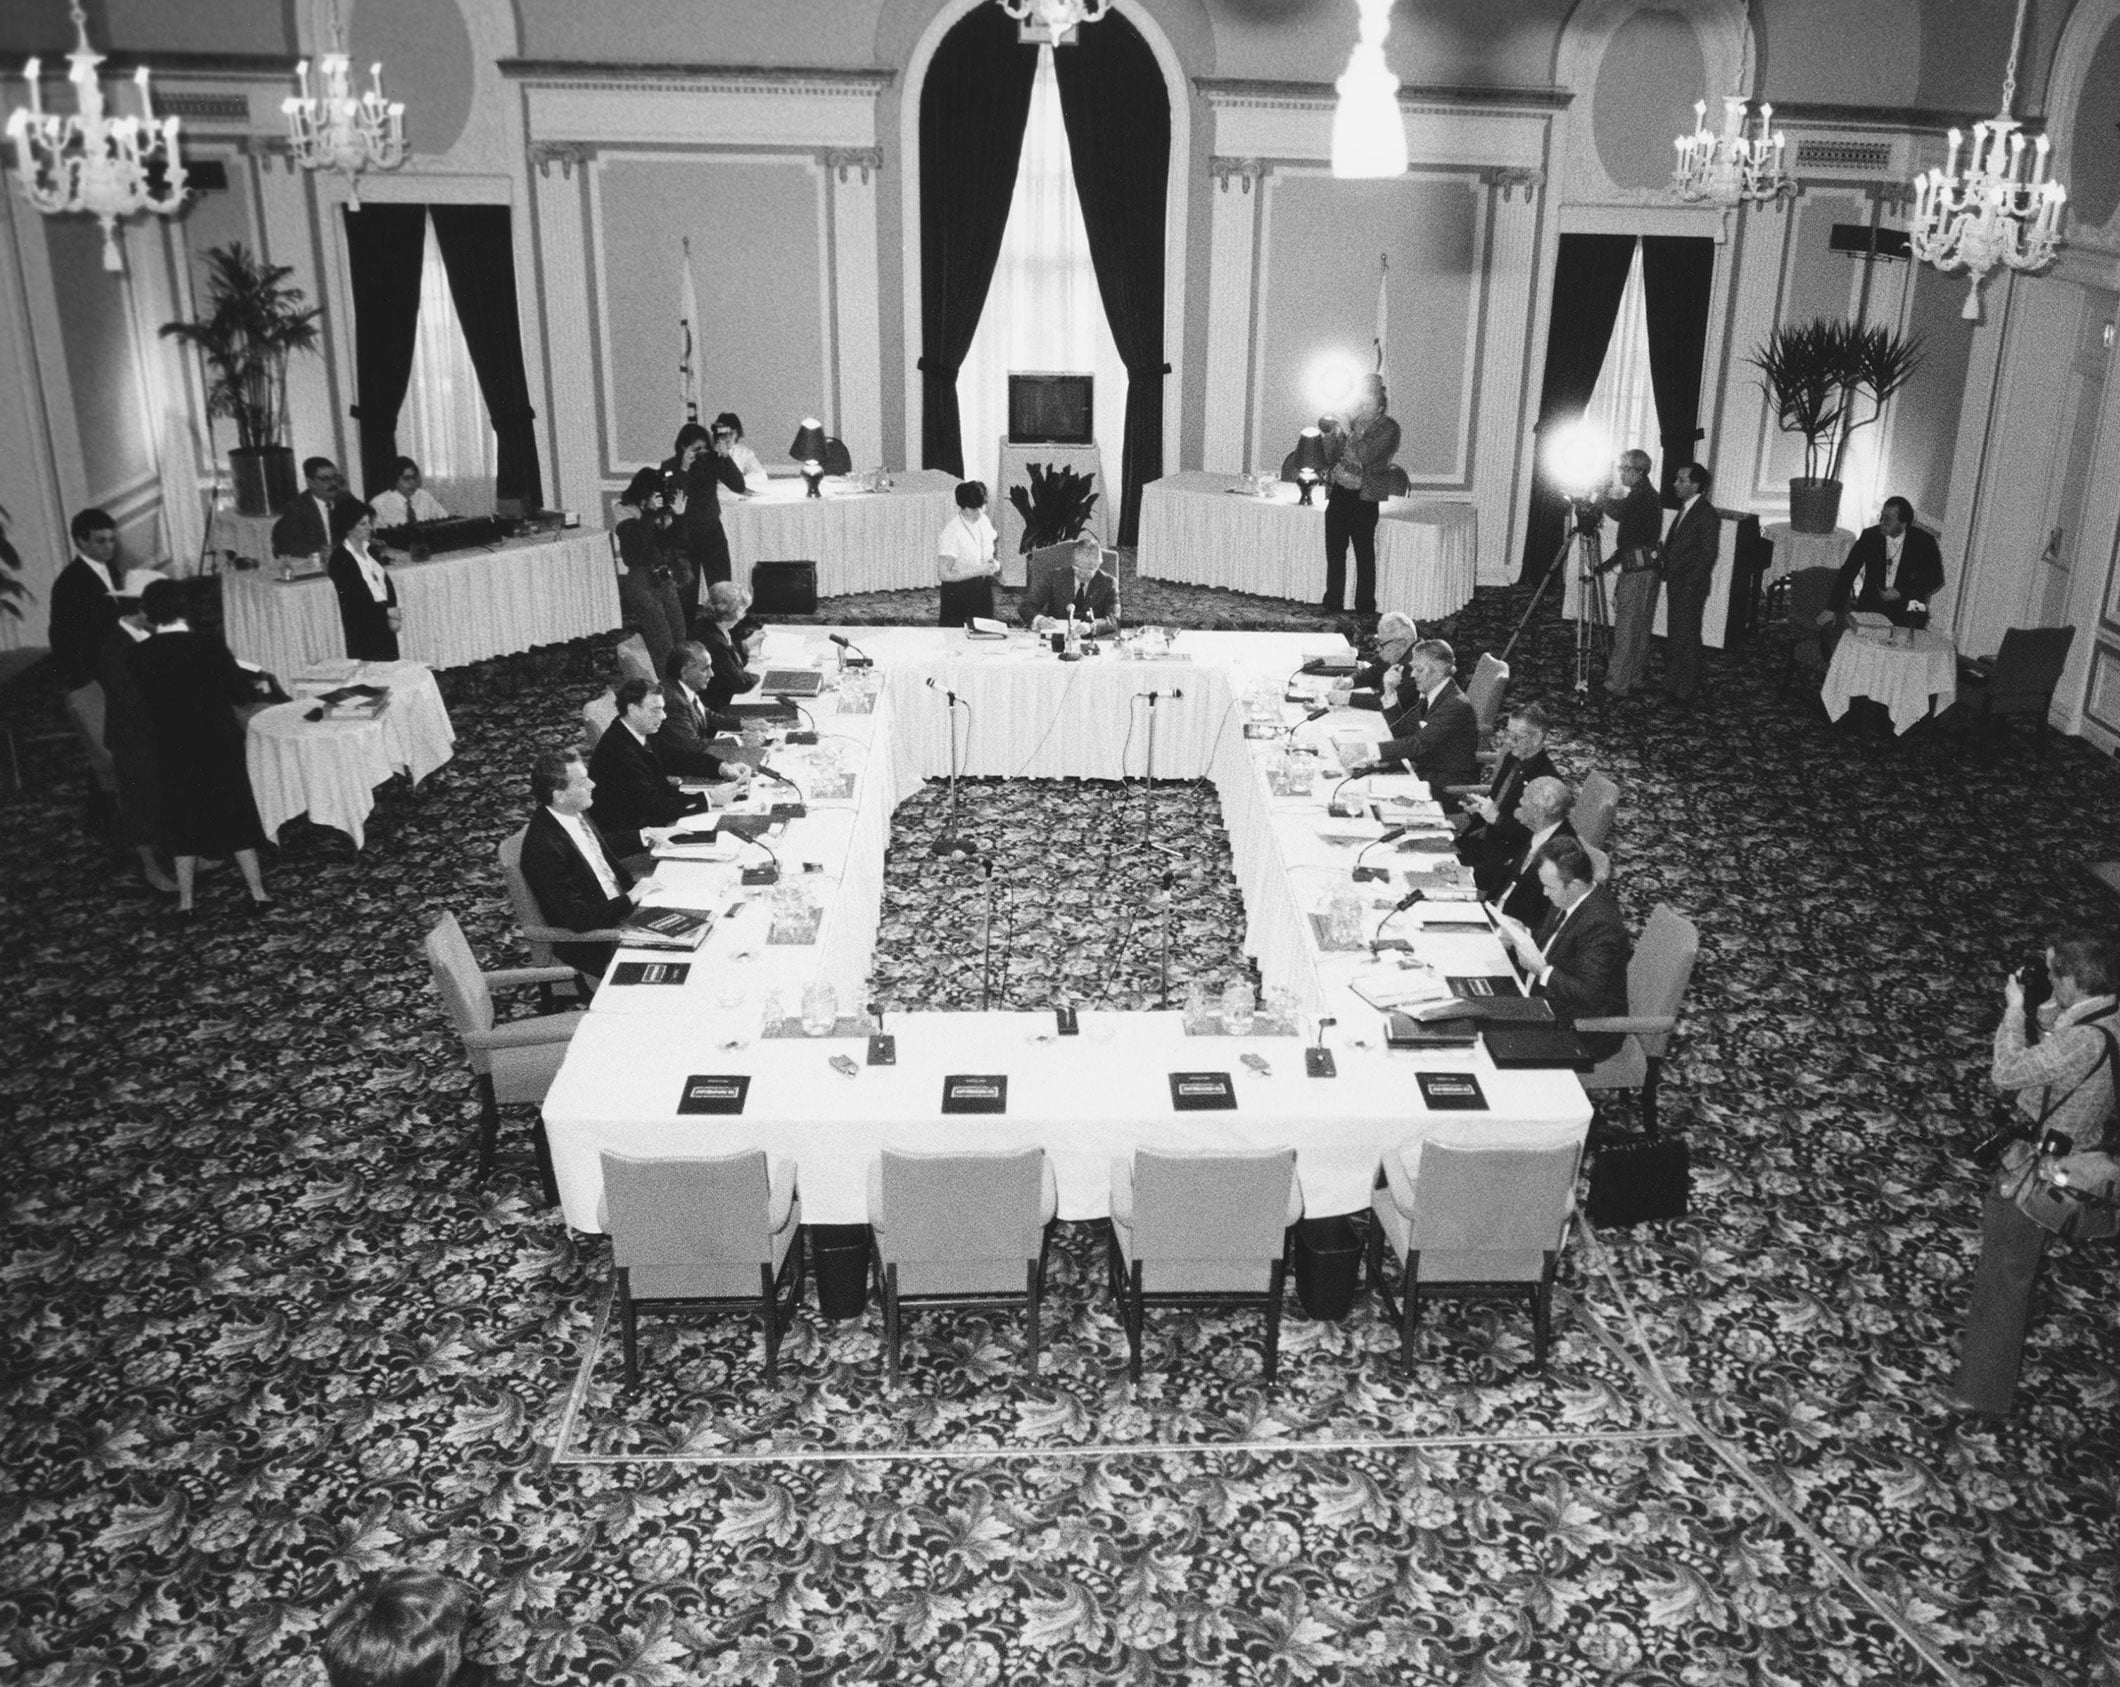 Meeting of the IOC Executive Board in Calgary, 1985